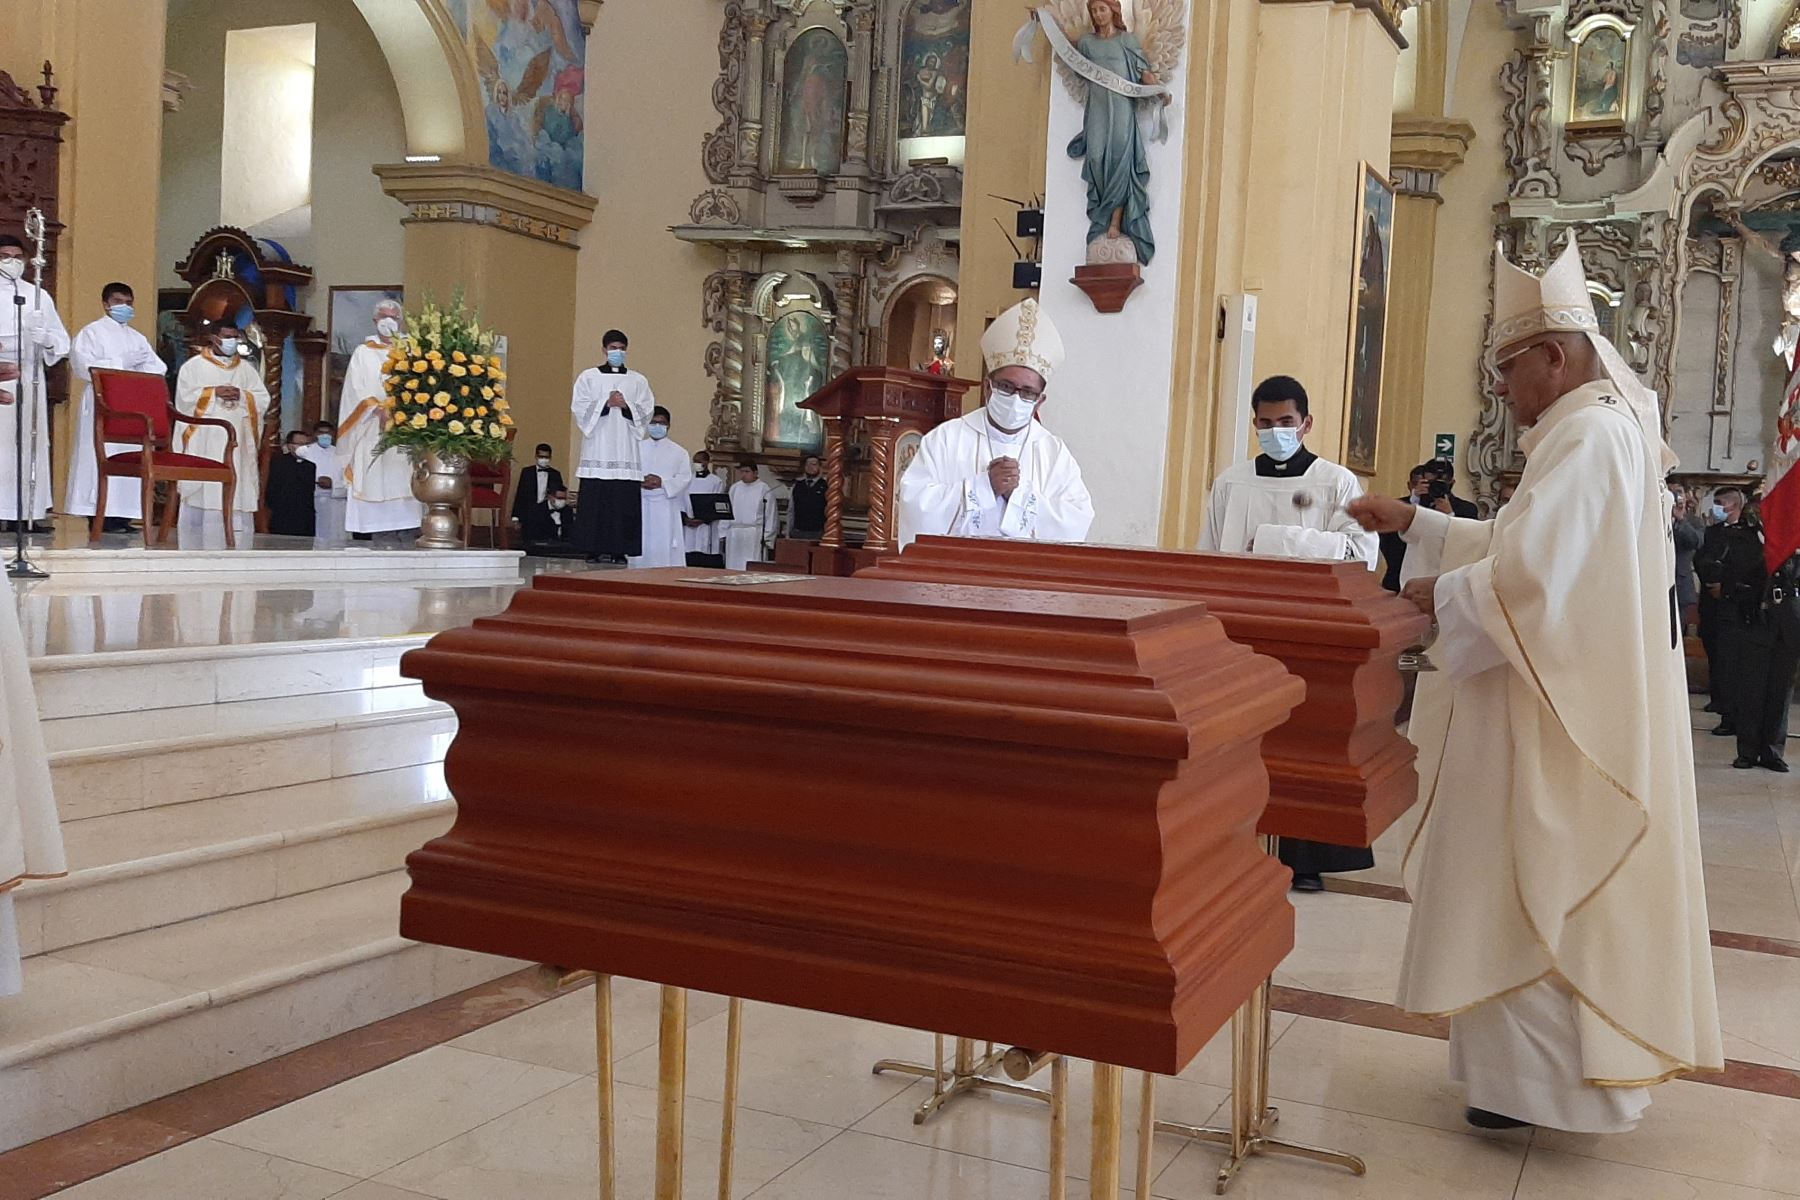 Los restos del marqués José Bernardo de Tagle y Portocarrero y su esposa ya descansan en la cripta de la Basílica Catedral de Trujillo. Foto: Cortesía Luis Puell